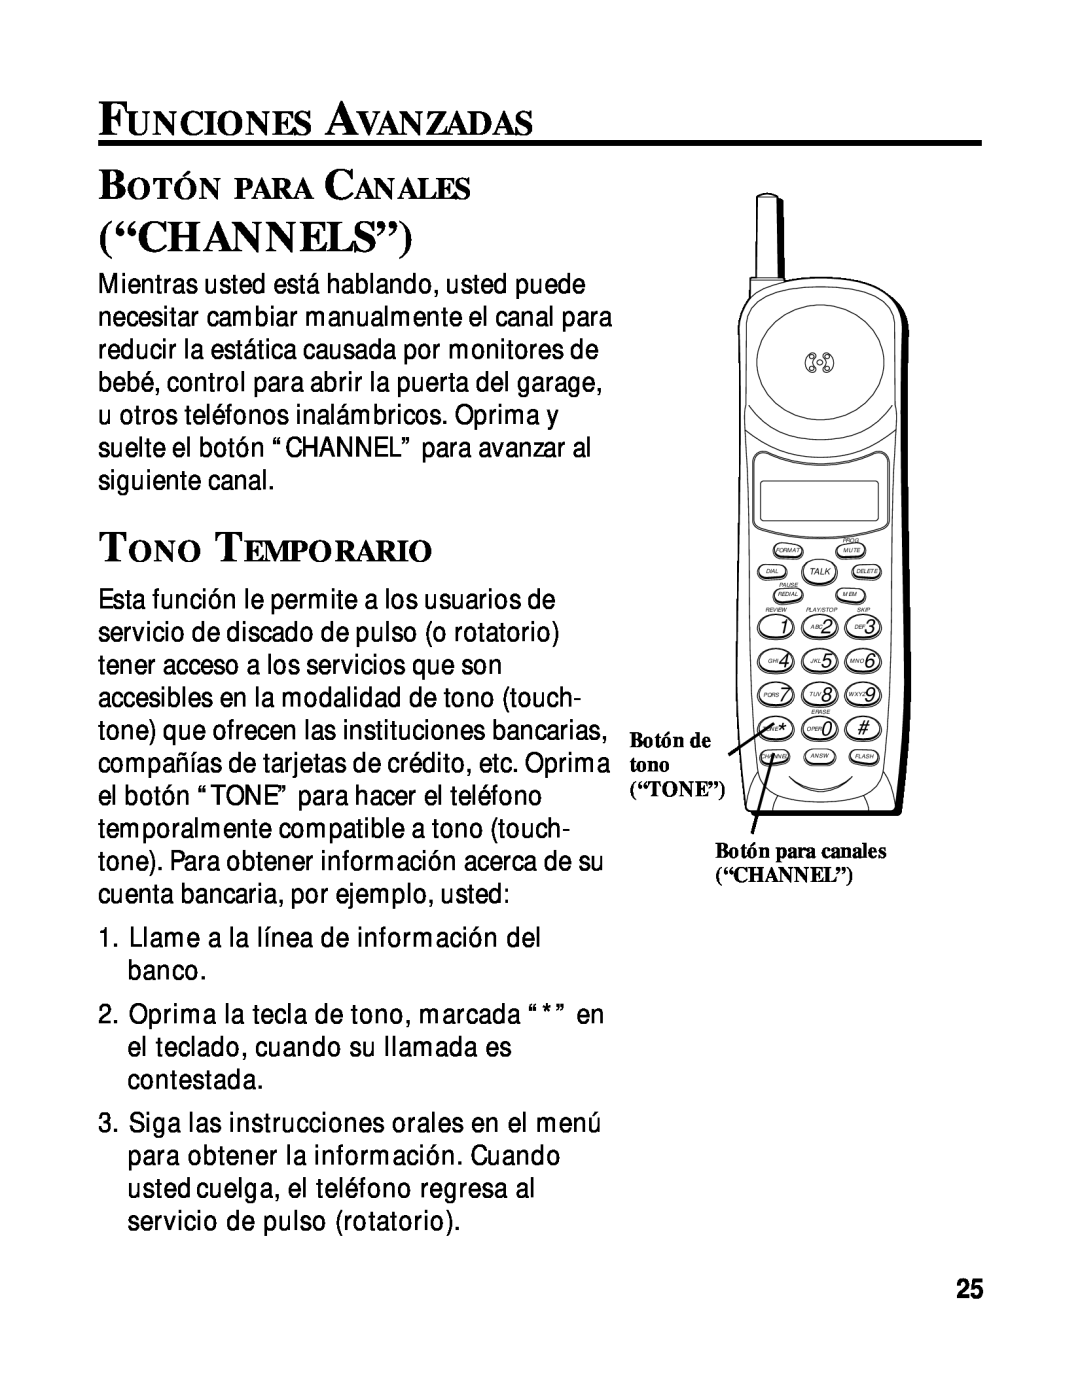 RCA 900 MHz manual “Channels”, Funciones Avanzadas, Botón Para Canales, Tono Temporario 